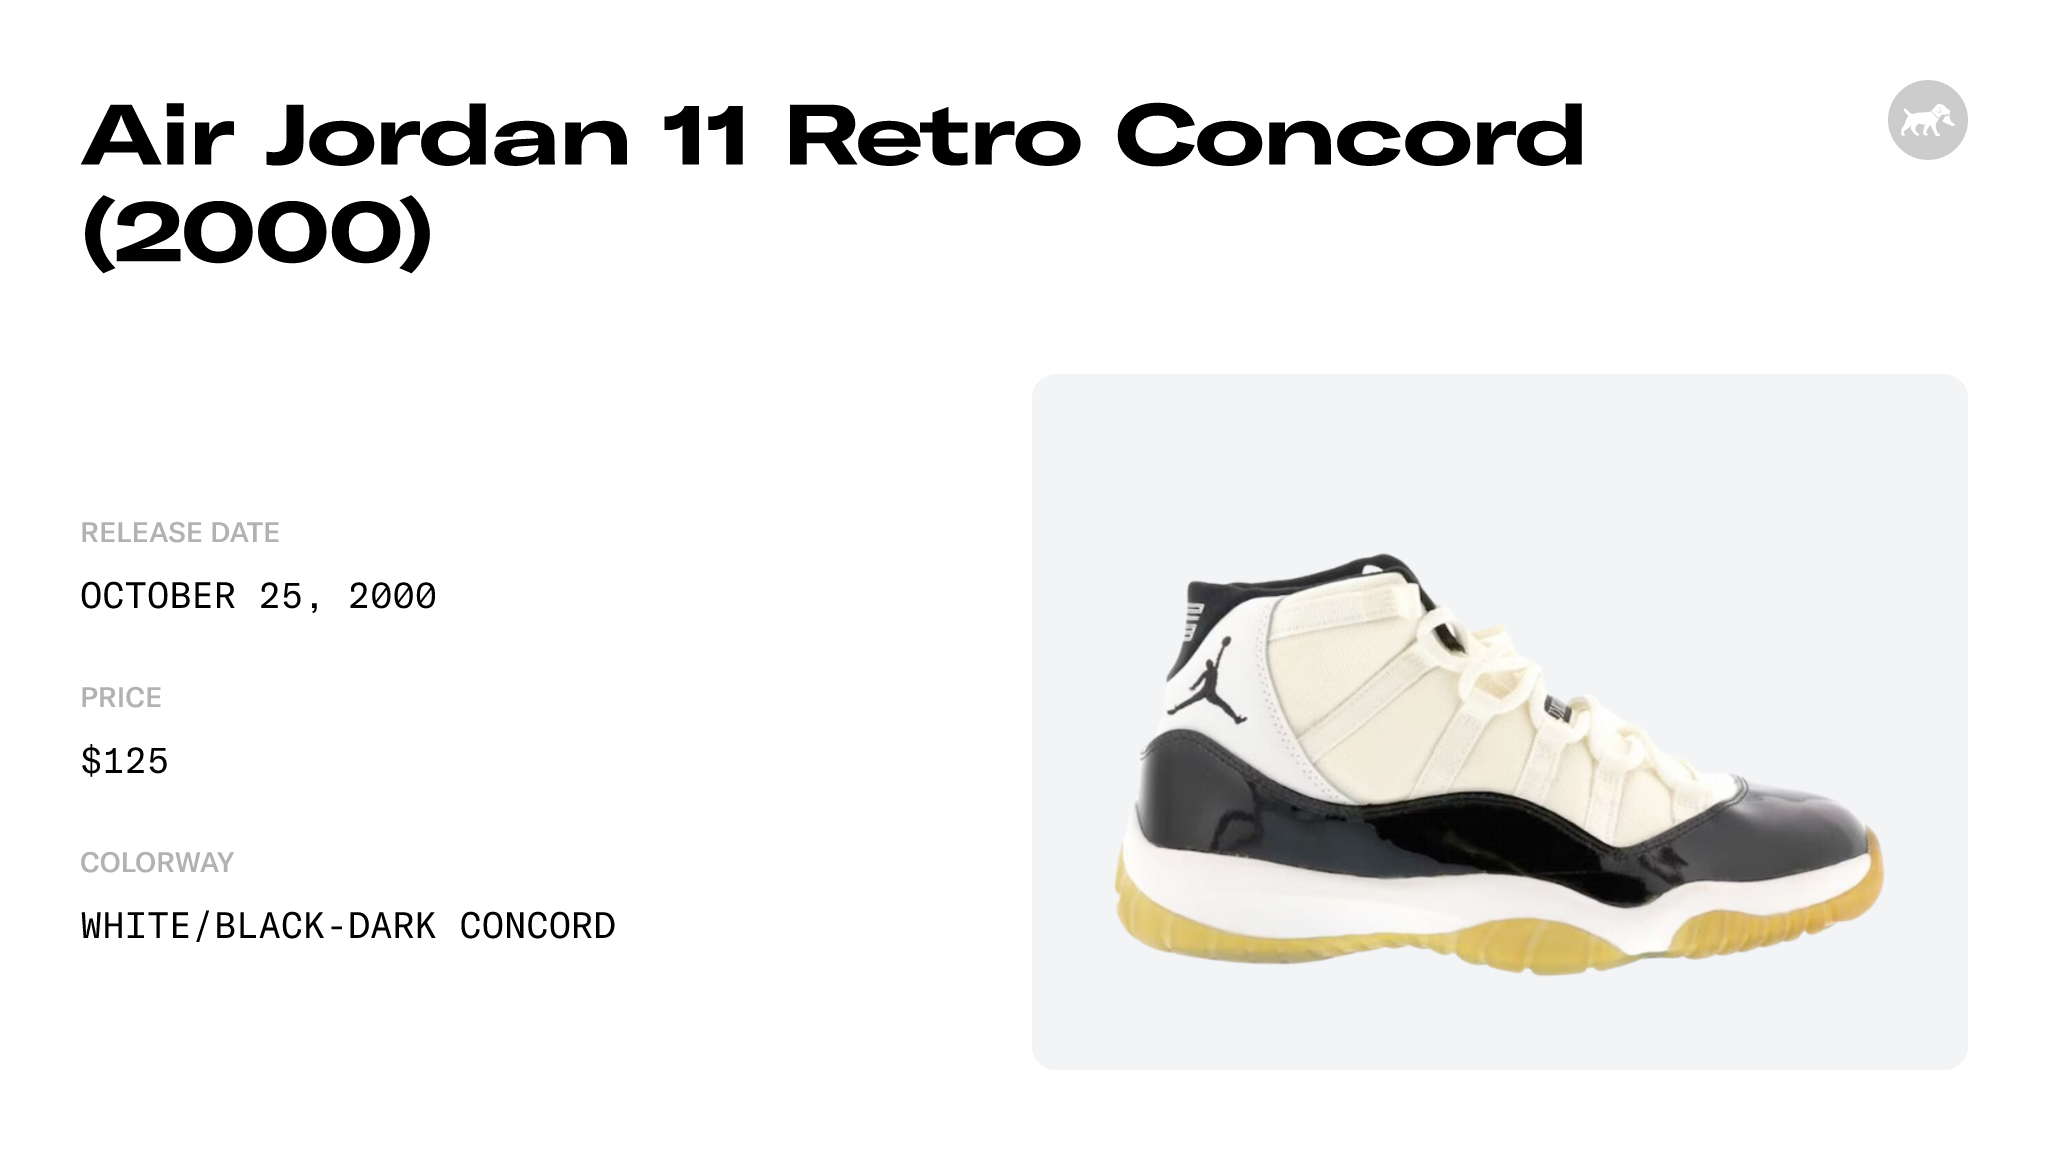 Air Jordan 11 Retro Concord (2000) - 136046-101 Raffles and Release Date